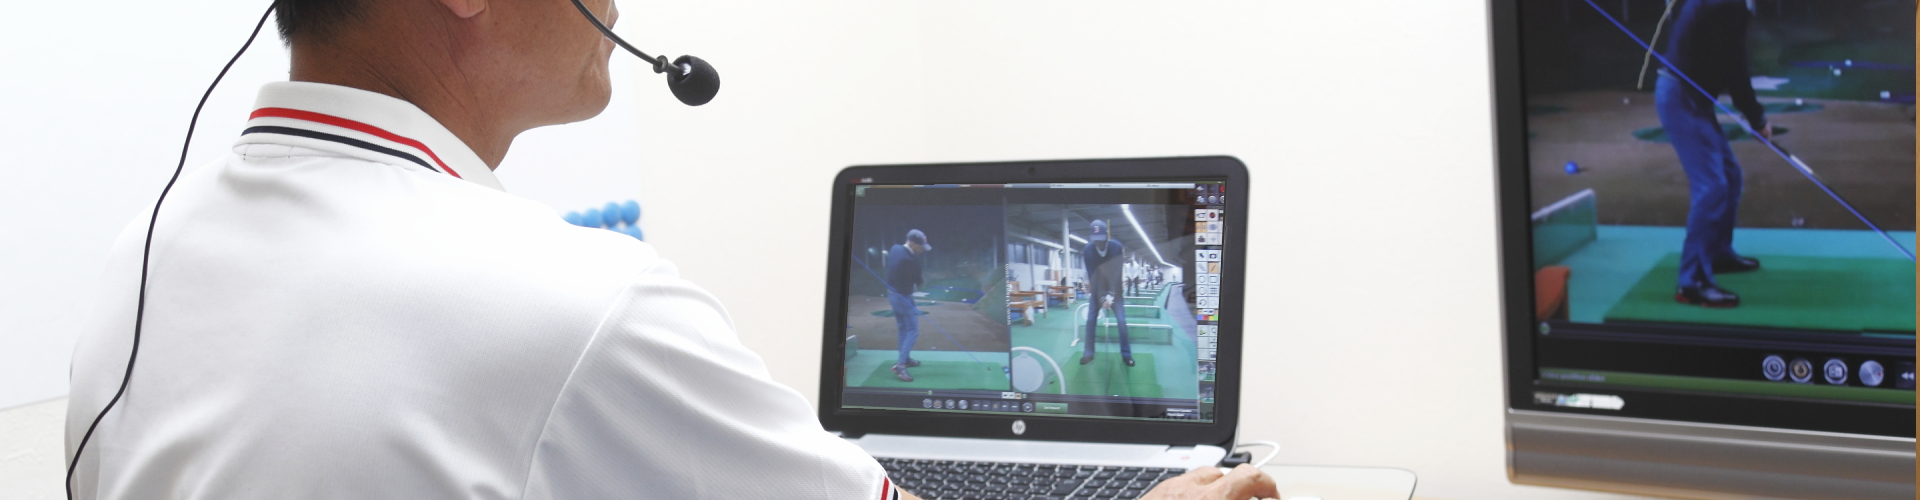 マックスオンラインゴルフレッスンでは、ゴルフを見直すお手伝いを致します。